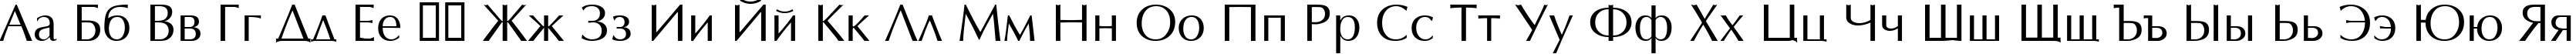 Пример написания русского алфавита шрифтом Optimal